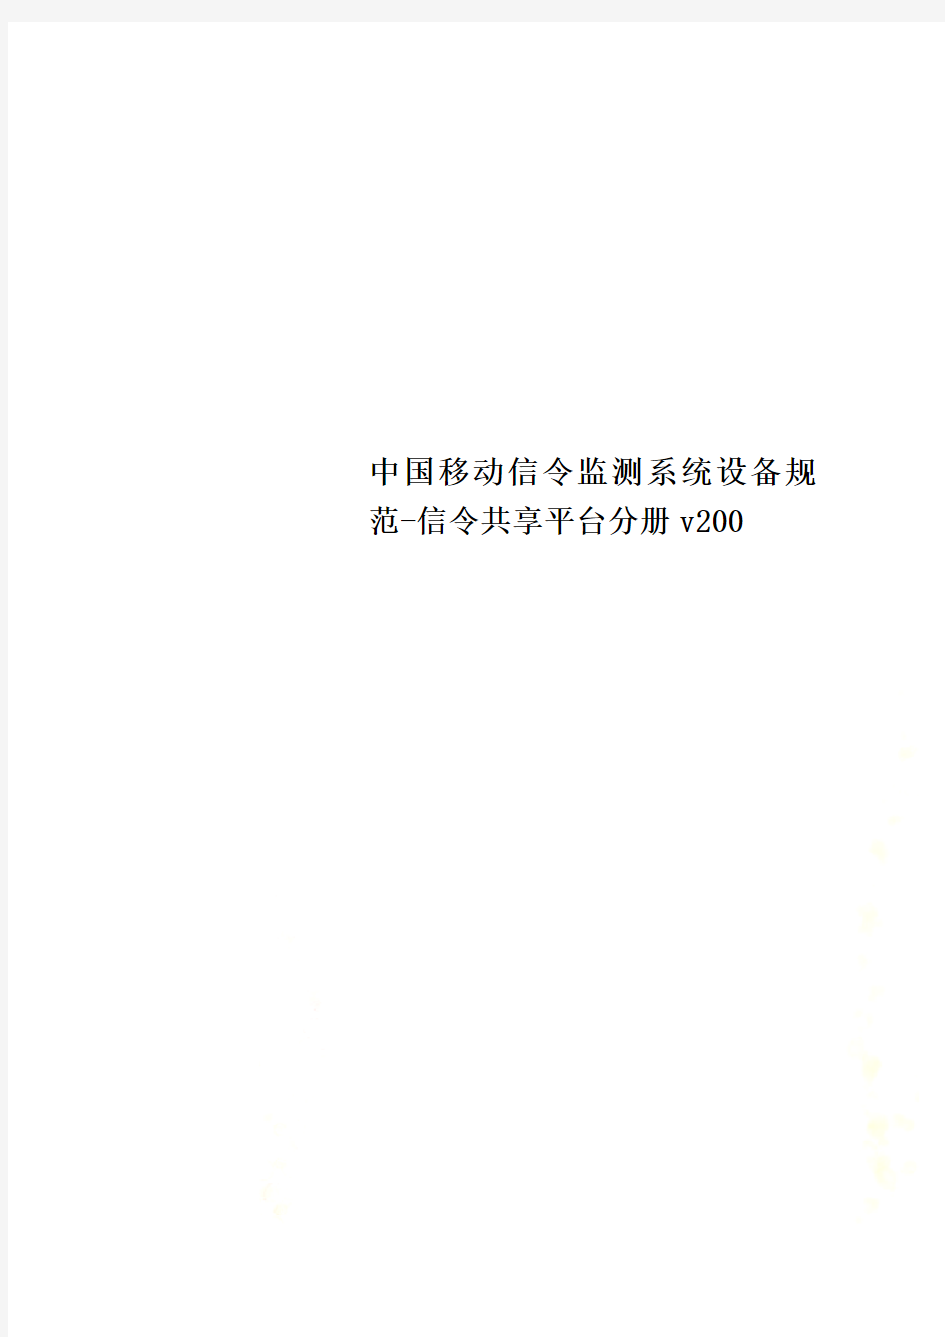 中国移动信令监测系统设备规范-信令共享平台分册v200